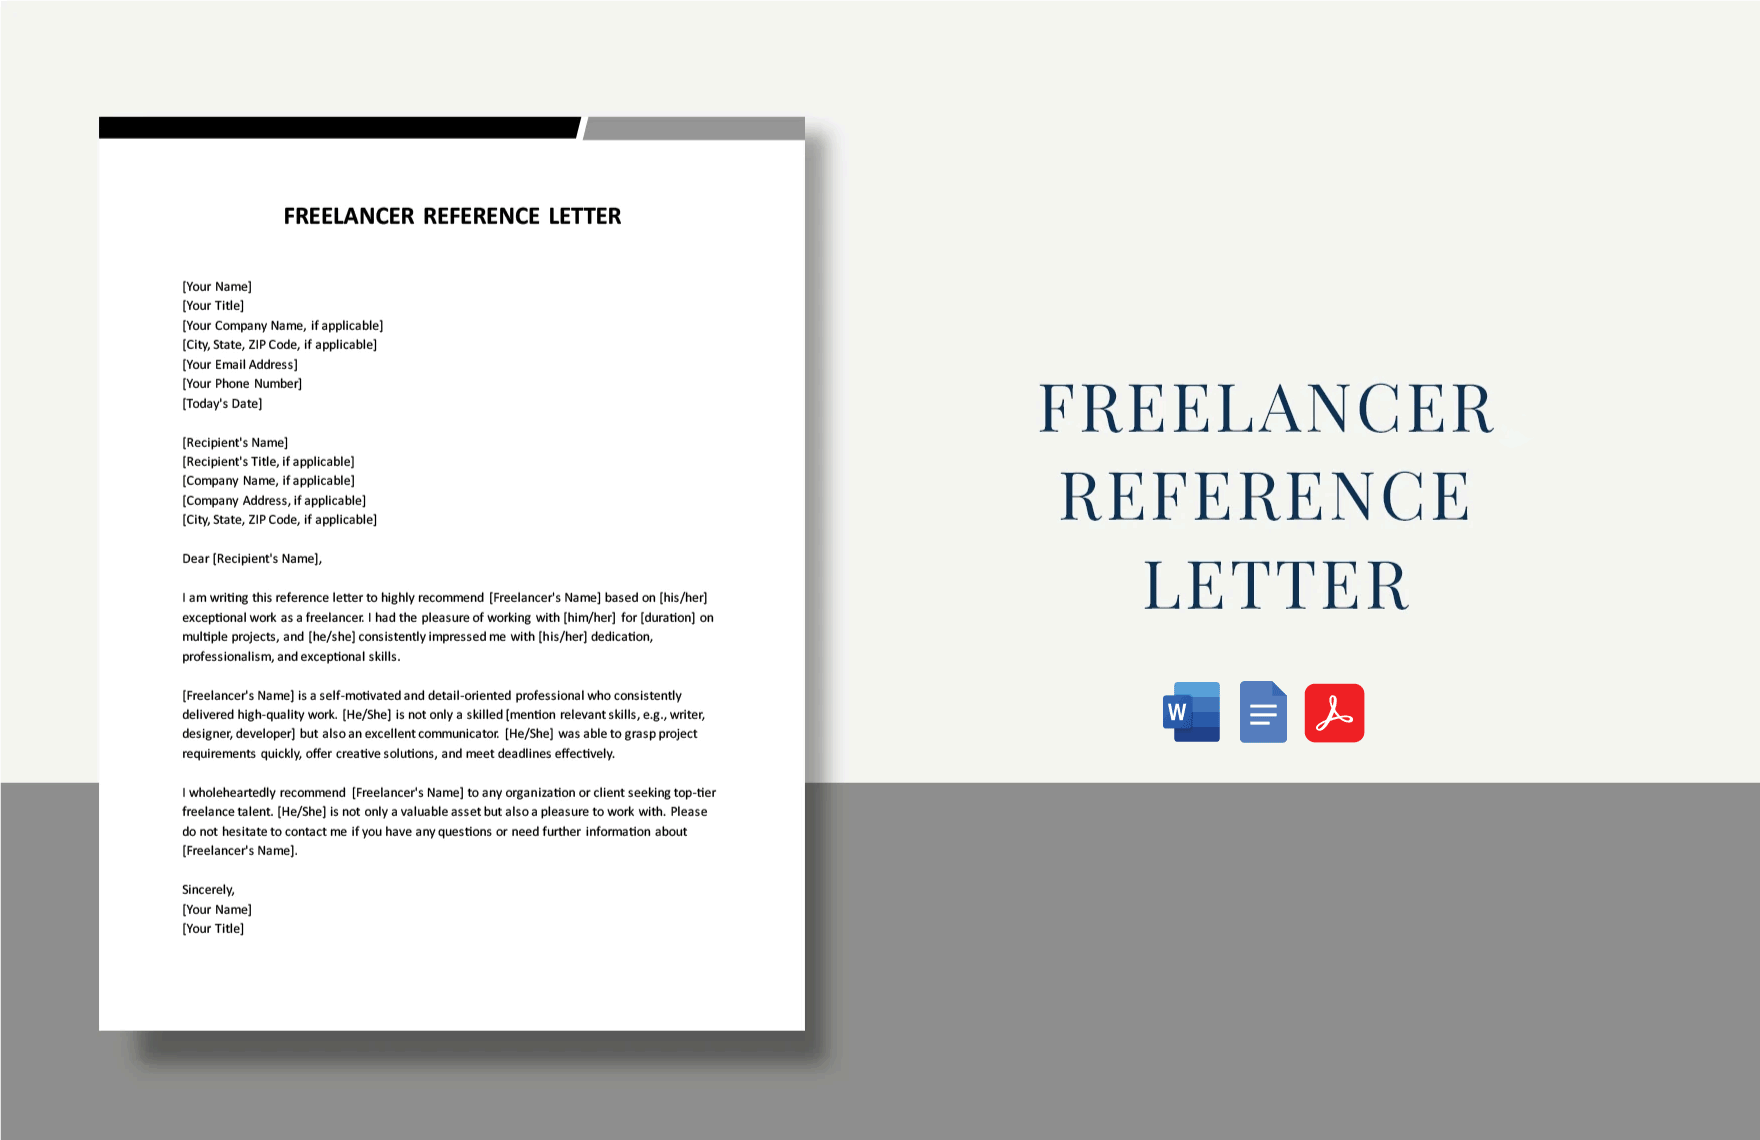 Freelancer Reference Letter in Word, Google Docs, PDF